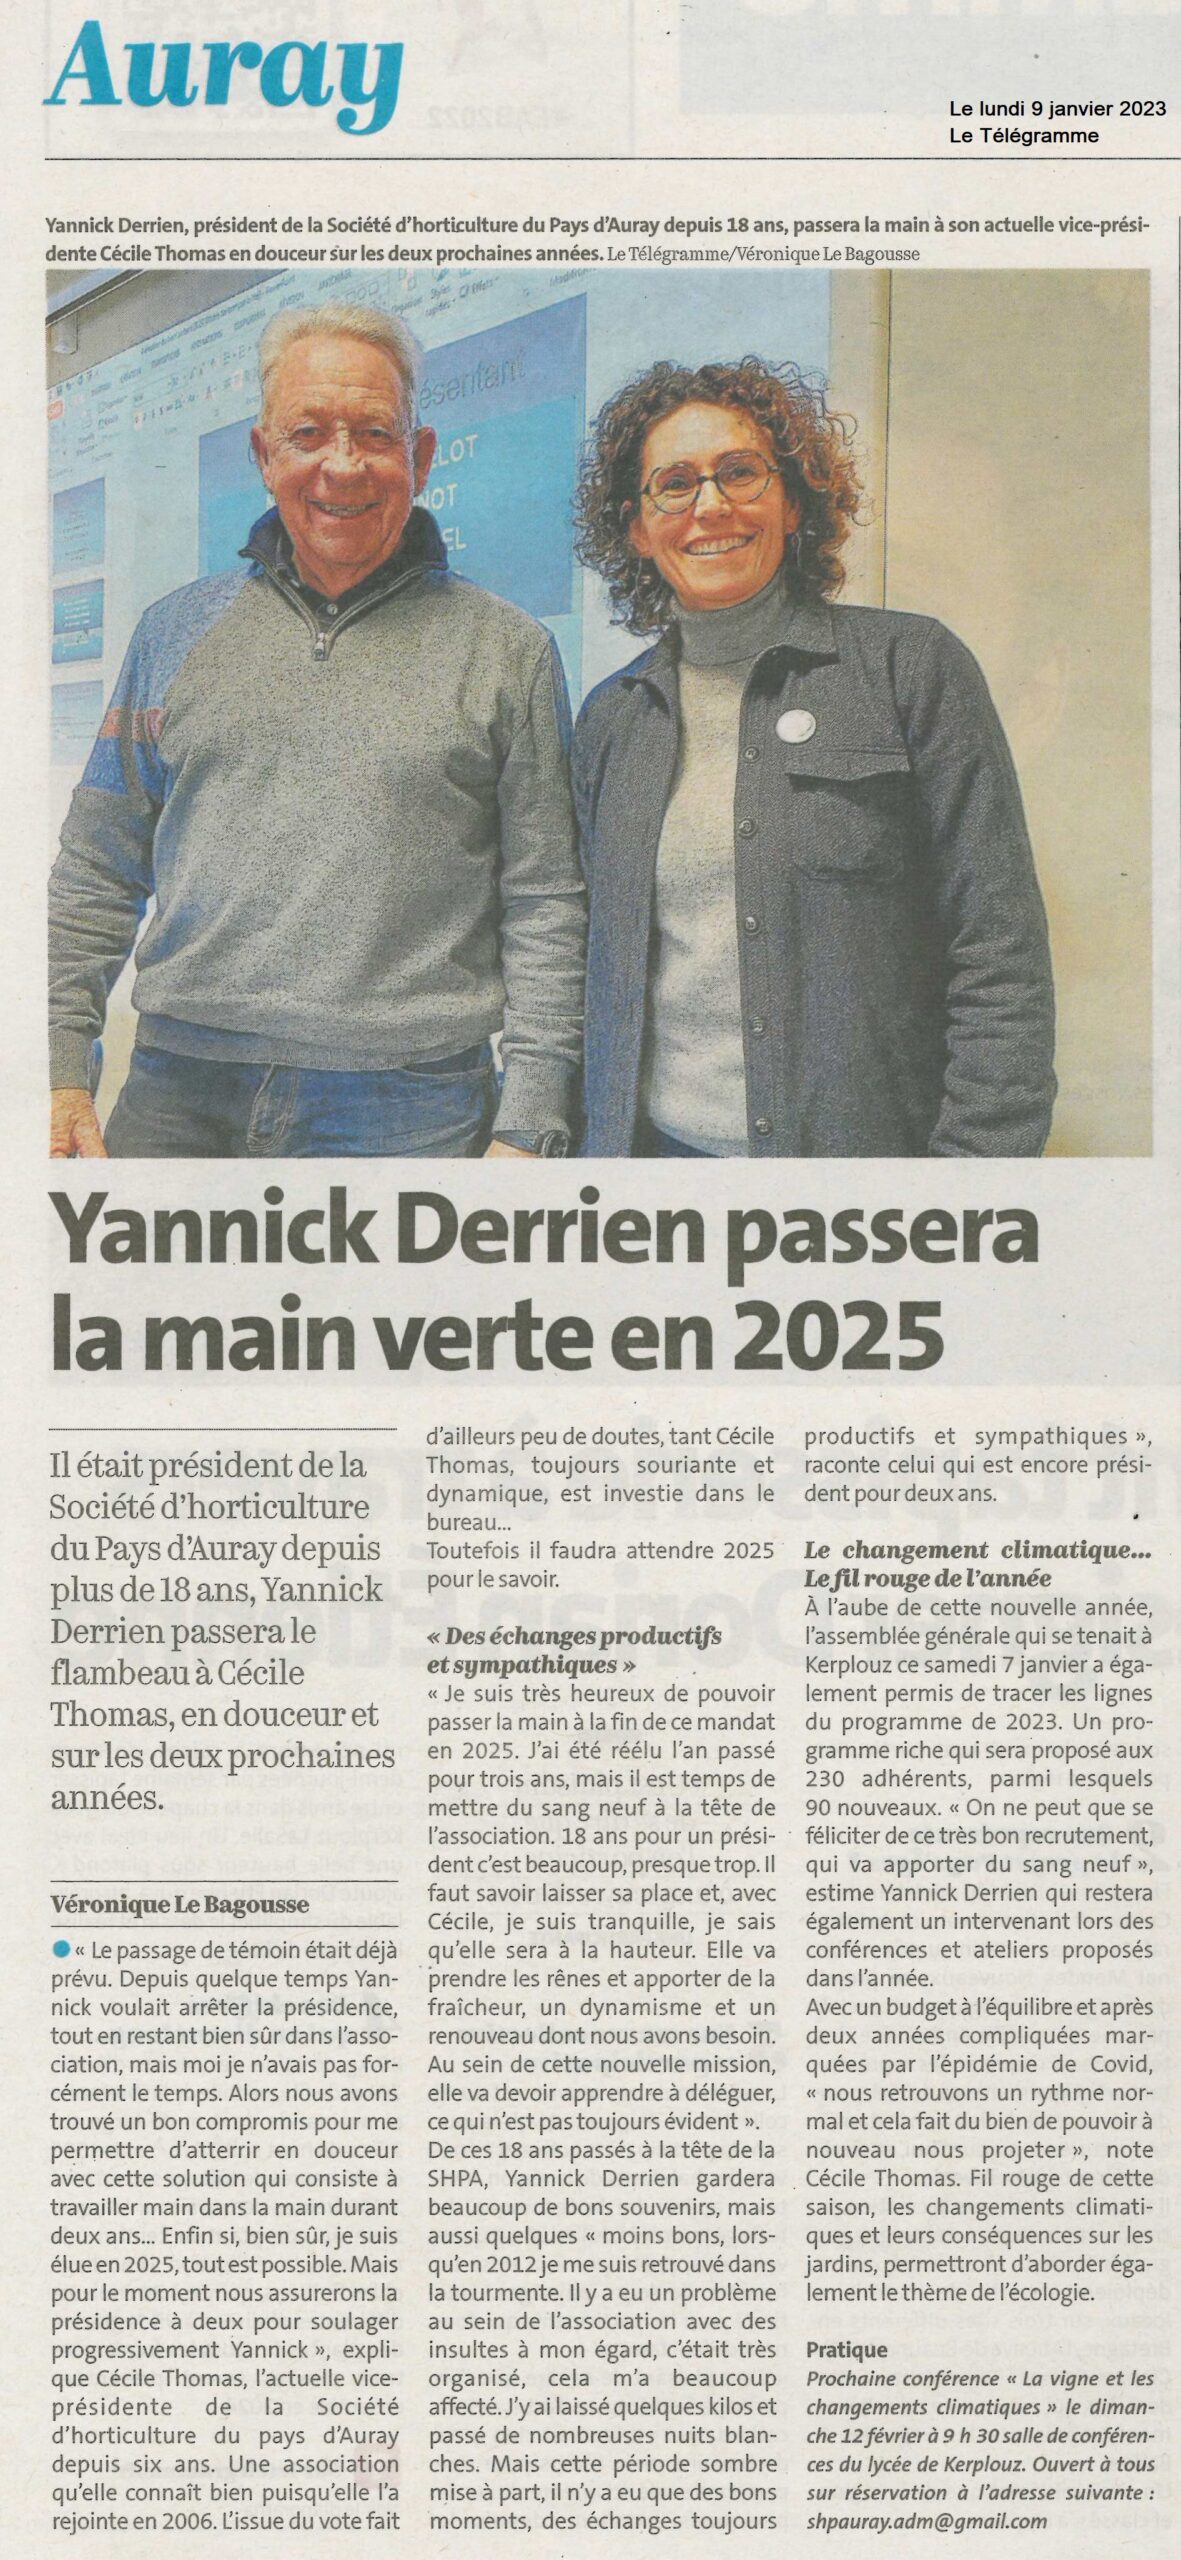 Yannick Derrien passera la main verte en 2025